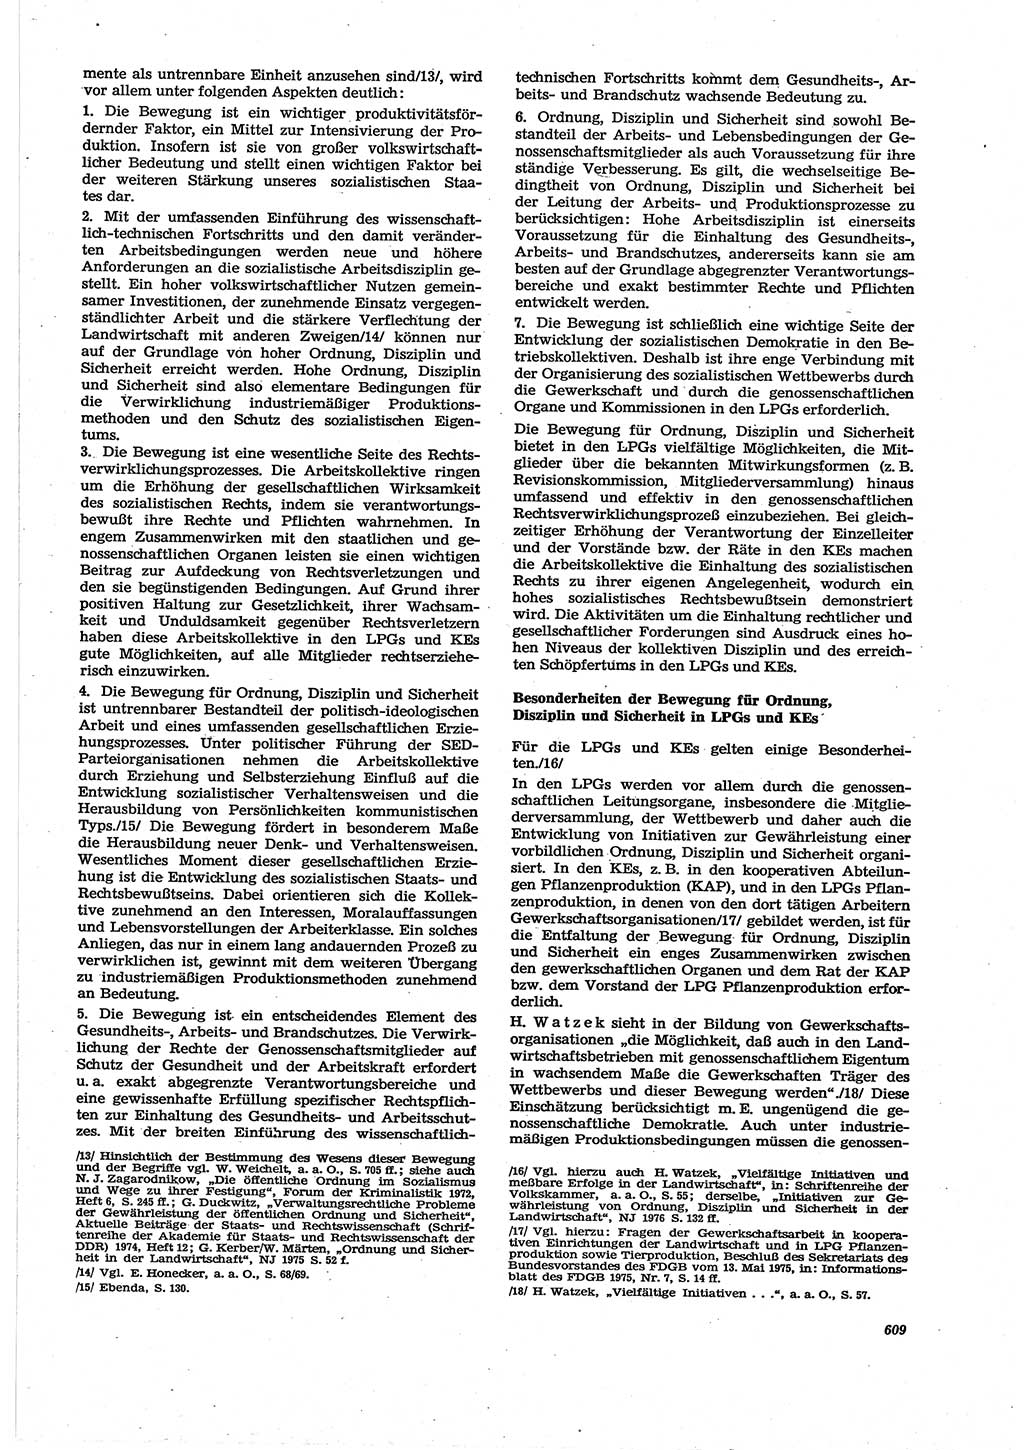 Neue Justiz (NJ), Zeitschrift für Recht und Rechtswissenschaft [Deutsche Demokratische Republik (DDR)], 30. Jahrgang 1976, Seite 609 (NJ DDR 1976, S. 609)